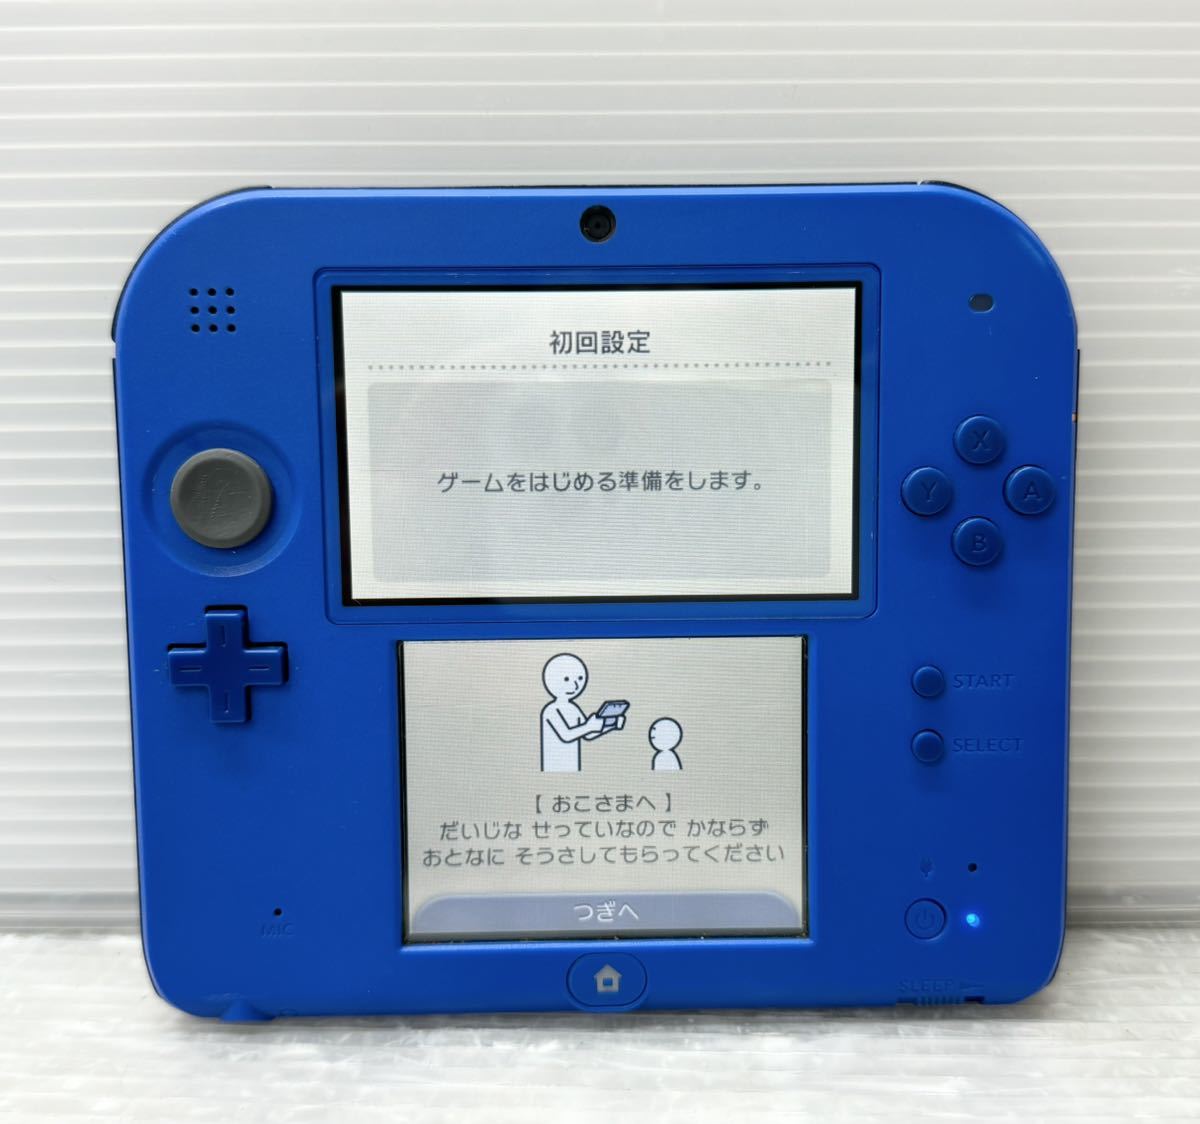 Nintendo ニンテンドー2DS (FTR-001) ブルー 本体のみ 付属品なし 初期化済み 純正ACアダプタ付き 中古動作確認済み